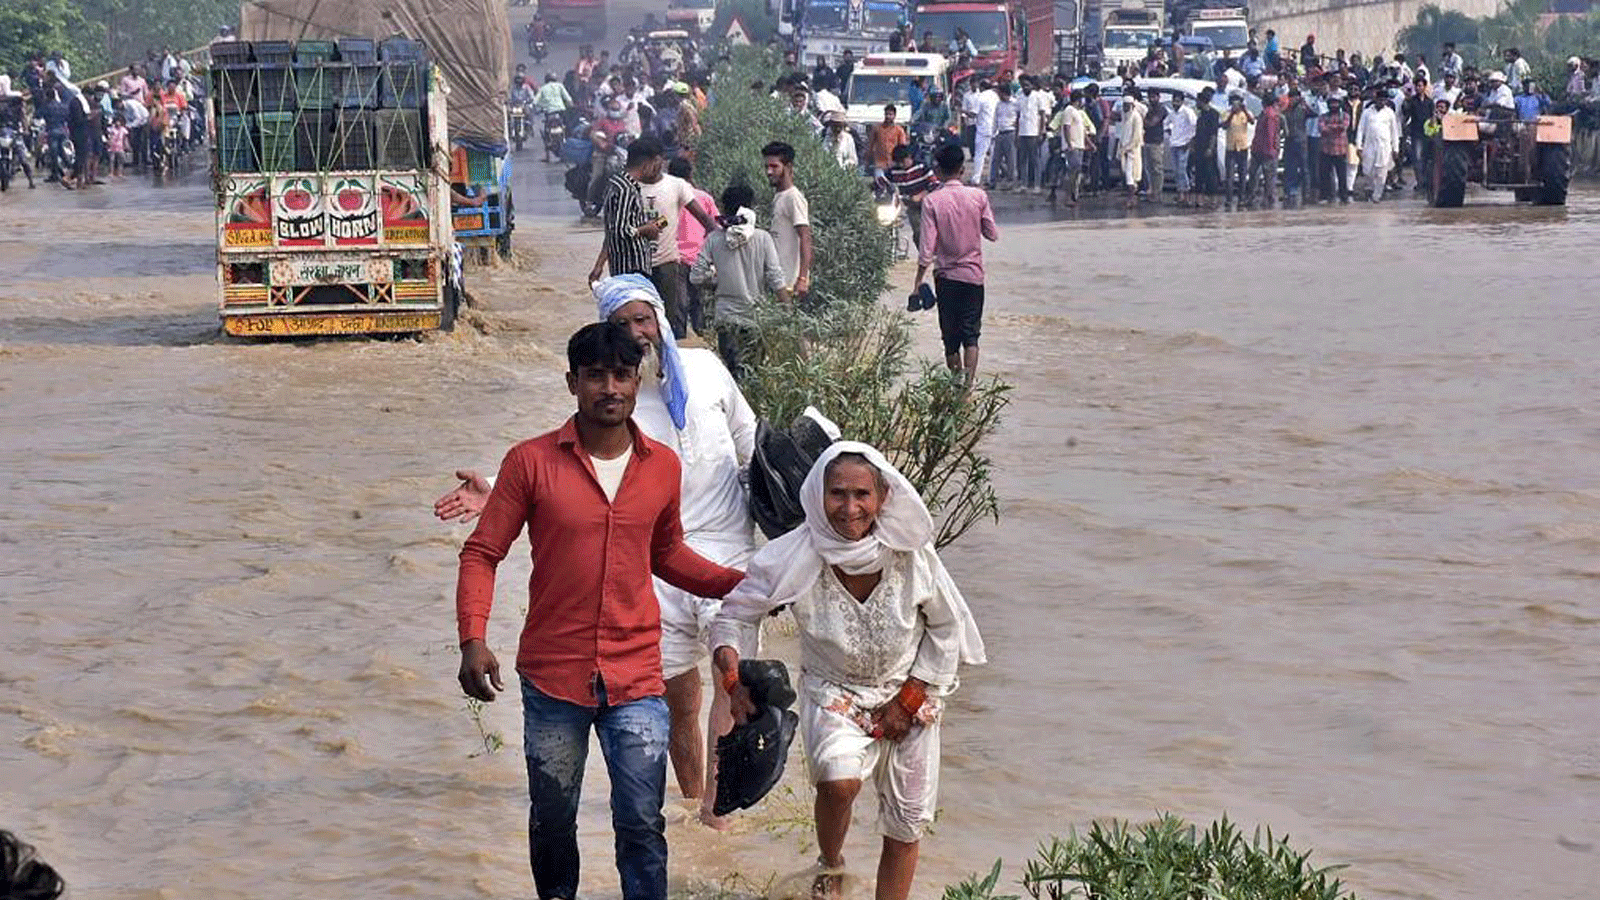 مسافرون يمرون عبر طريقٍ سريع وطني غمرته الفيضانات بعد أن فاض نهر كوسي جراء هطول أمطار غزيرة بالقرب من رامبور في ولاية أوتار براديش الهندية في 20 أكتوبر 2021 ، حيث تجاوز عدد القتلى من أيام الفيضانات والانهيارات الأرضية في الهند ونيبال 100 شخص.